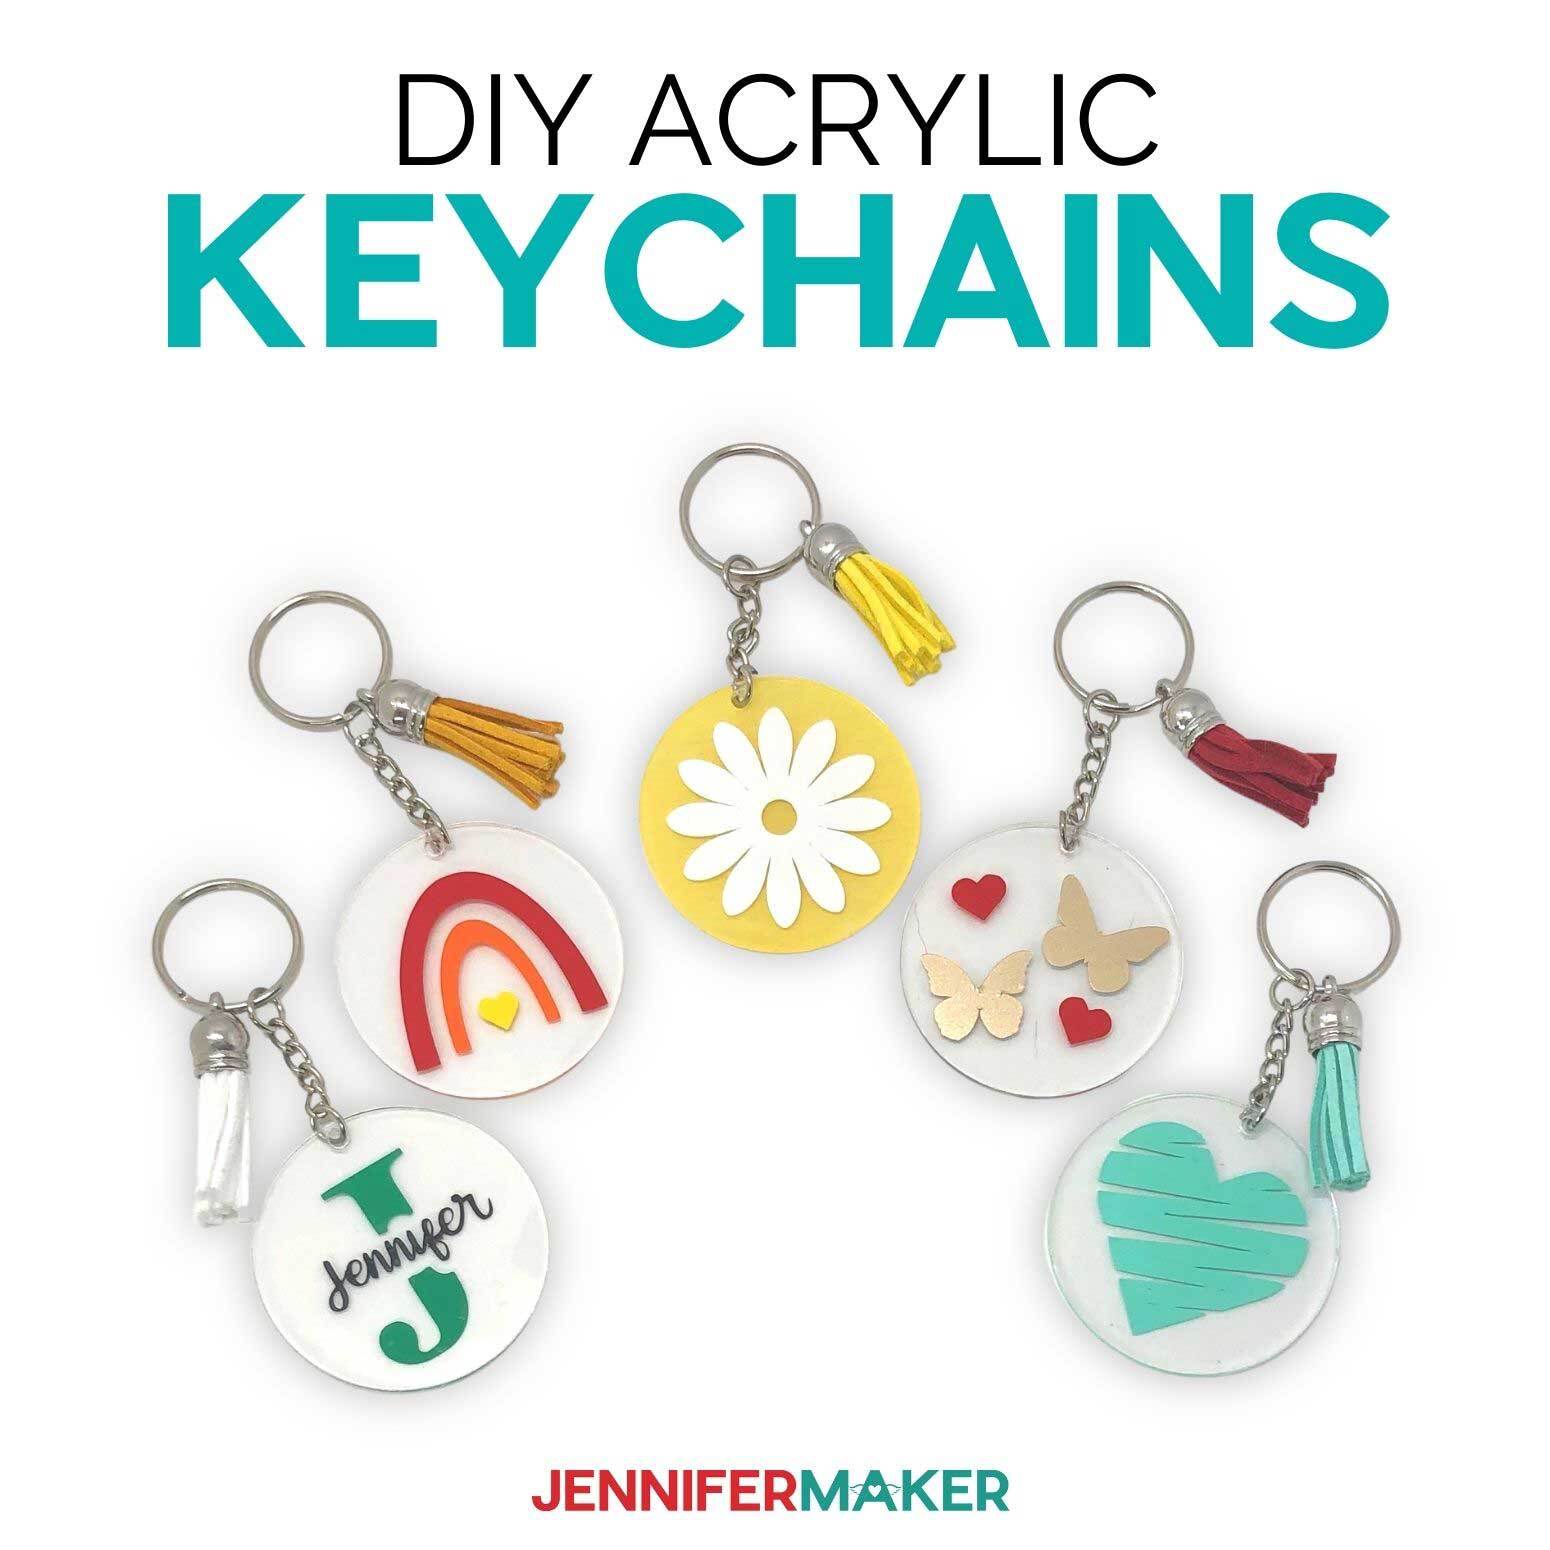 DIY Acrylic Keychains on the Cricut: Easy & Cute!